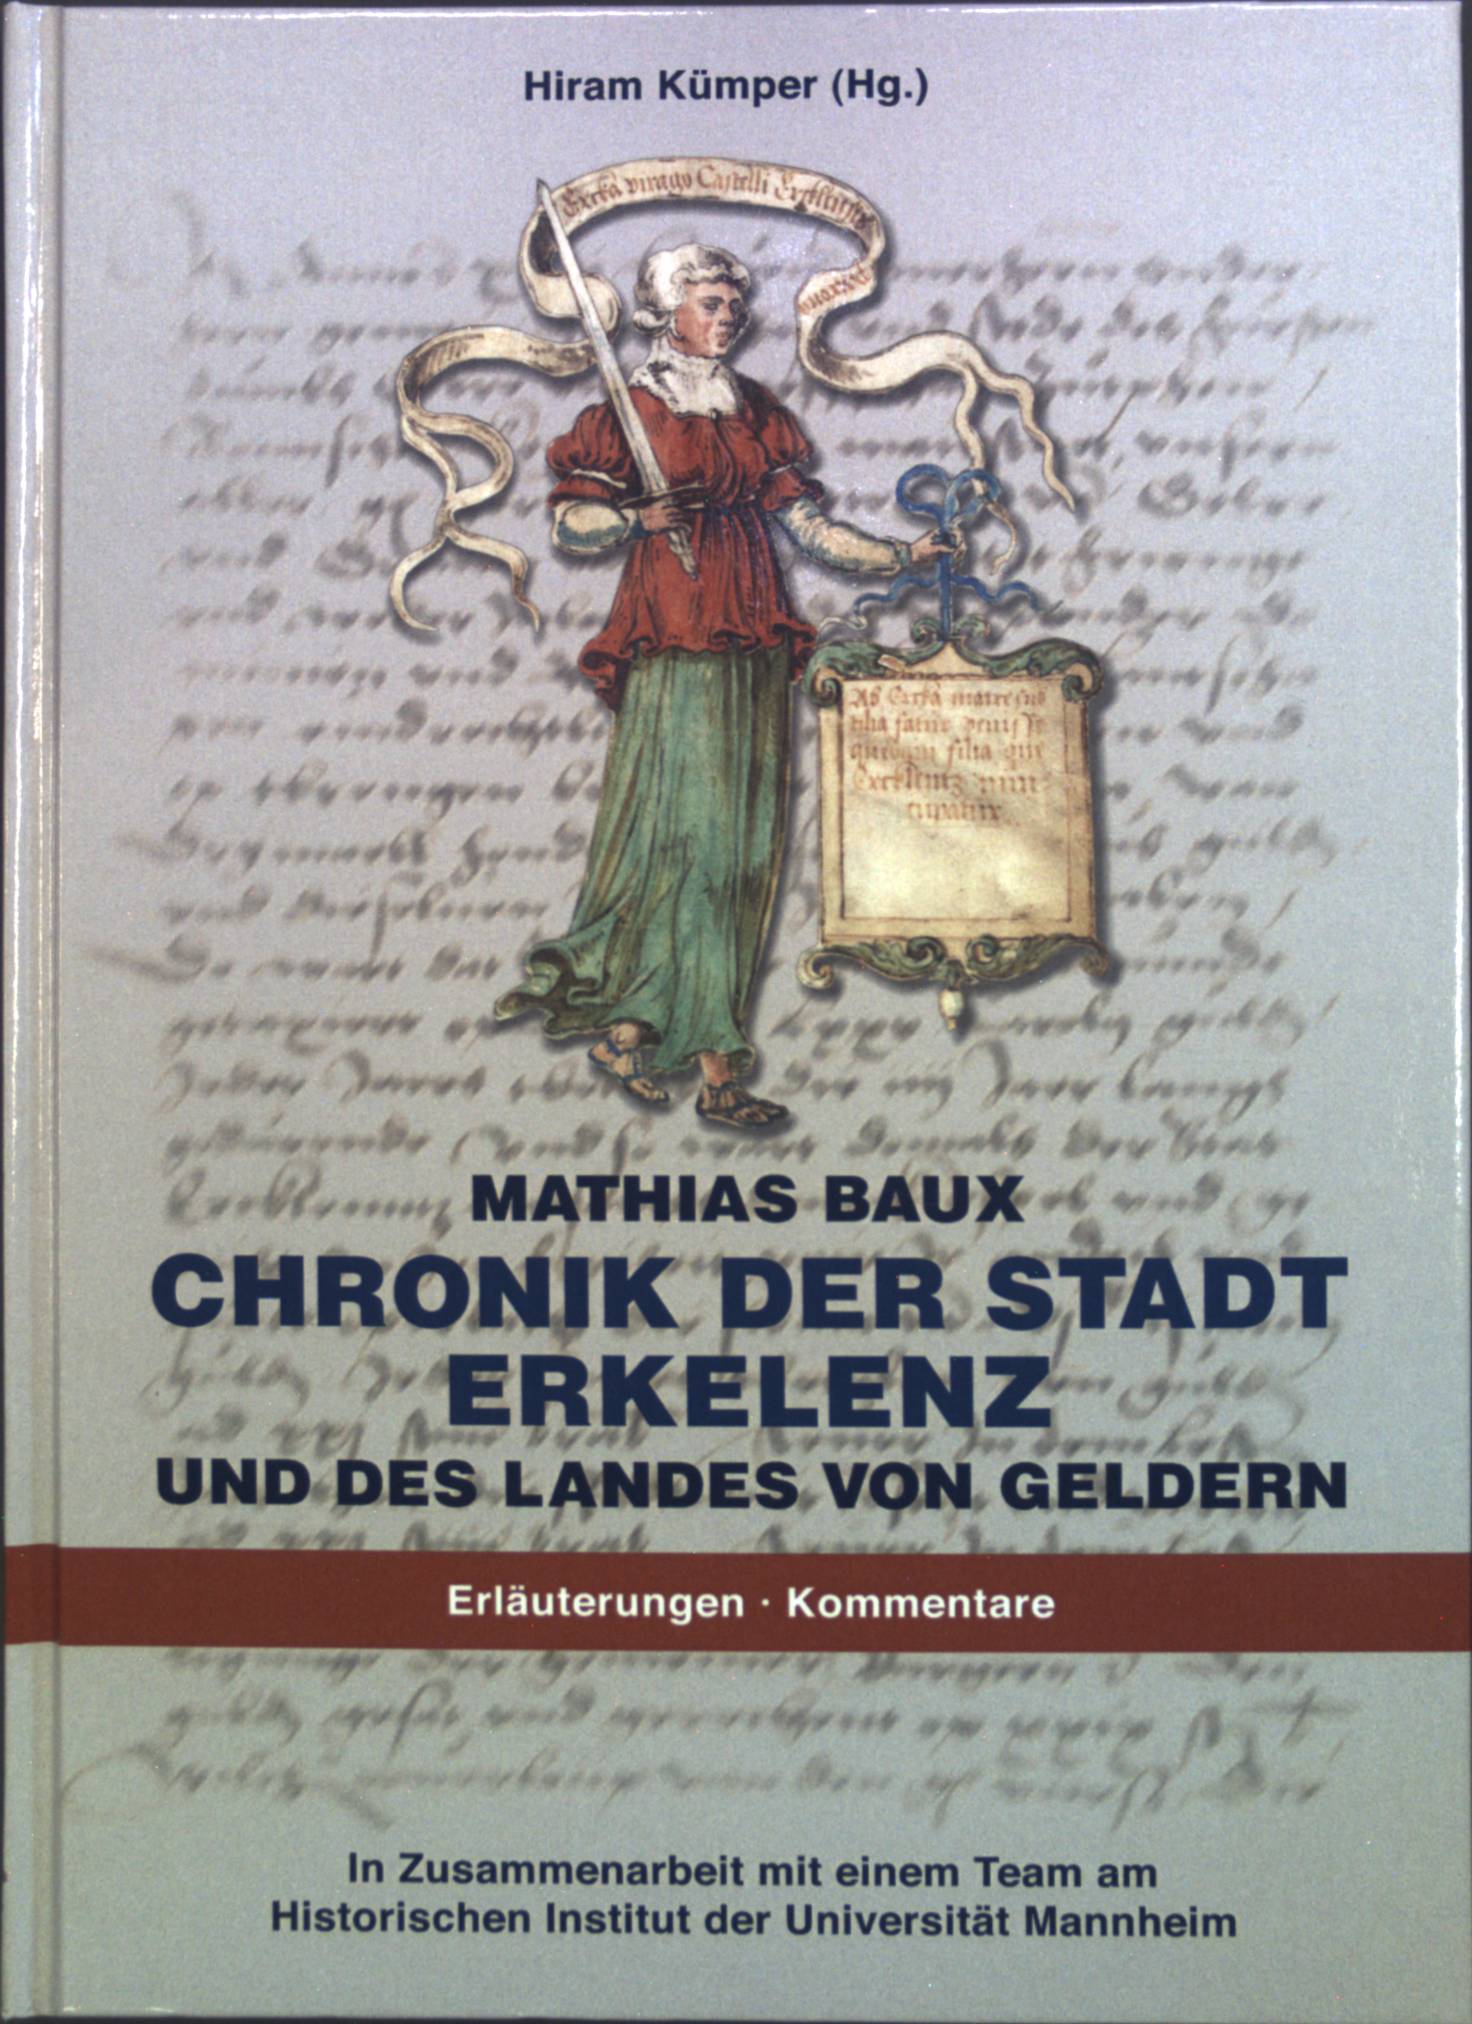 Chronik der Stadt Erkelenz und des Landes von Geldern: Band 2 - Baux, Mathias, Hiram Kümper Rudolf Bosch u. a.